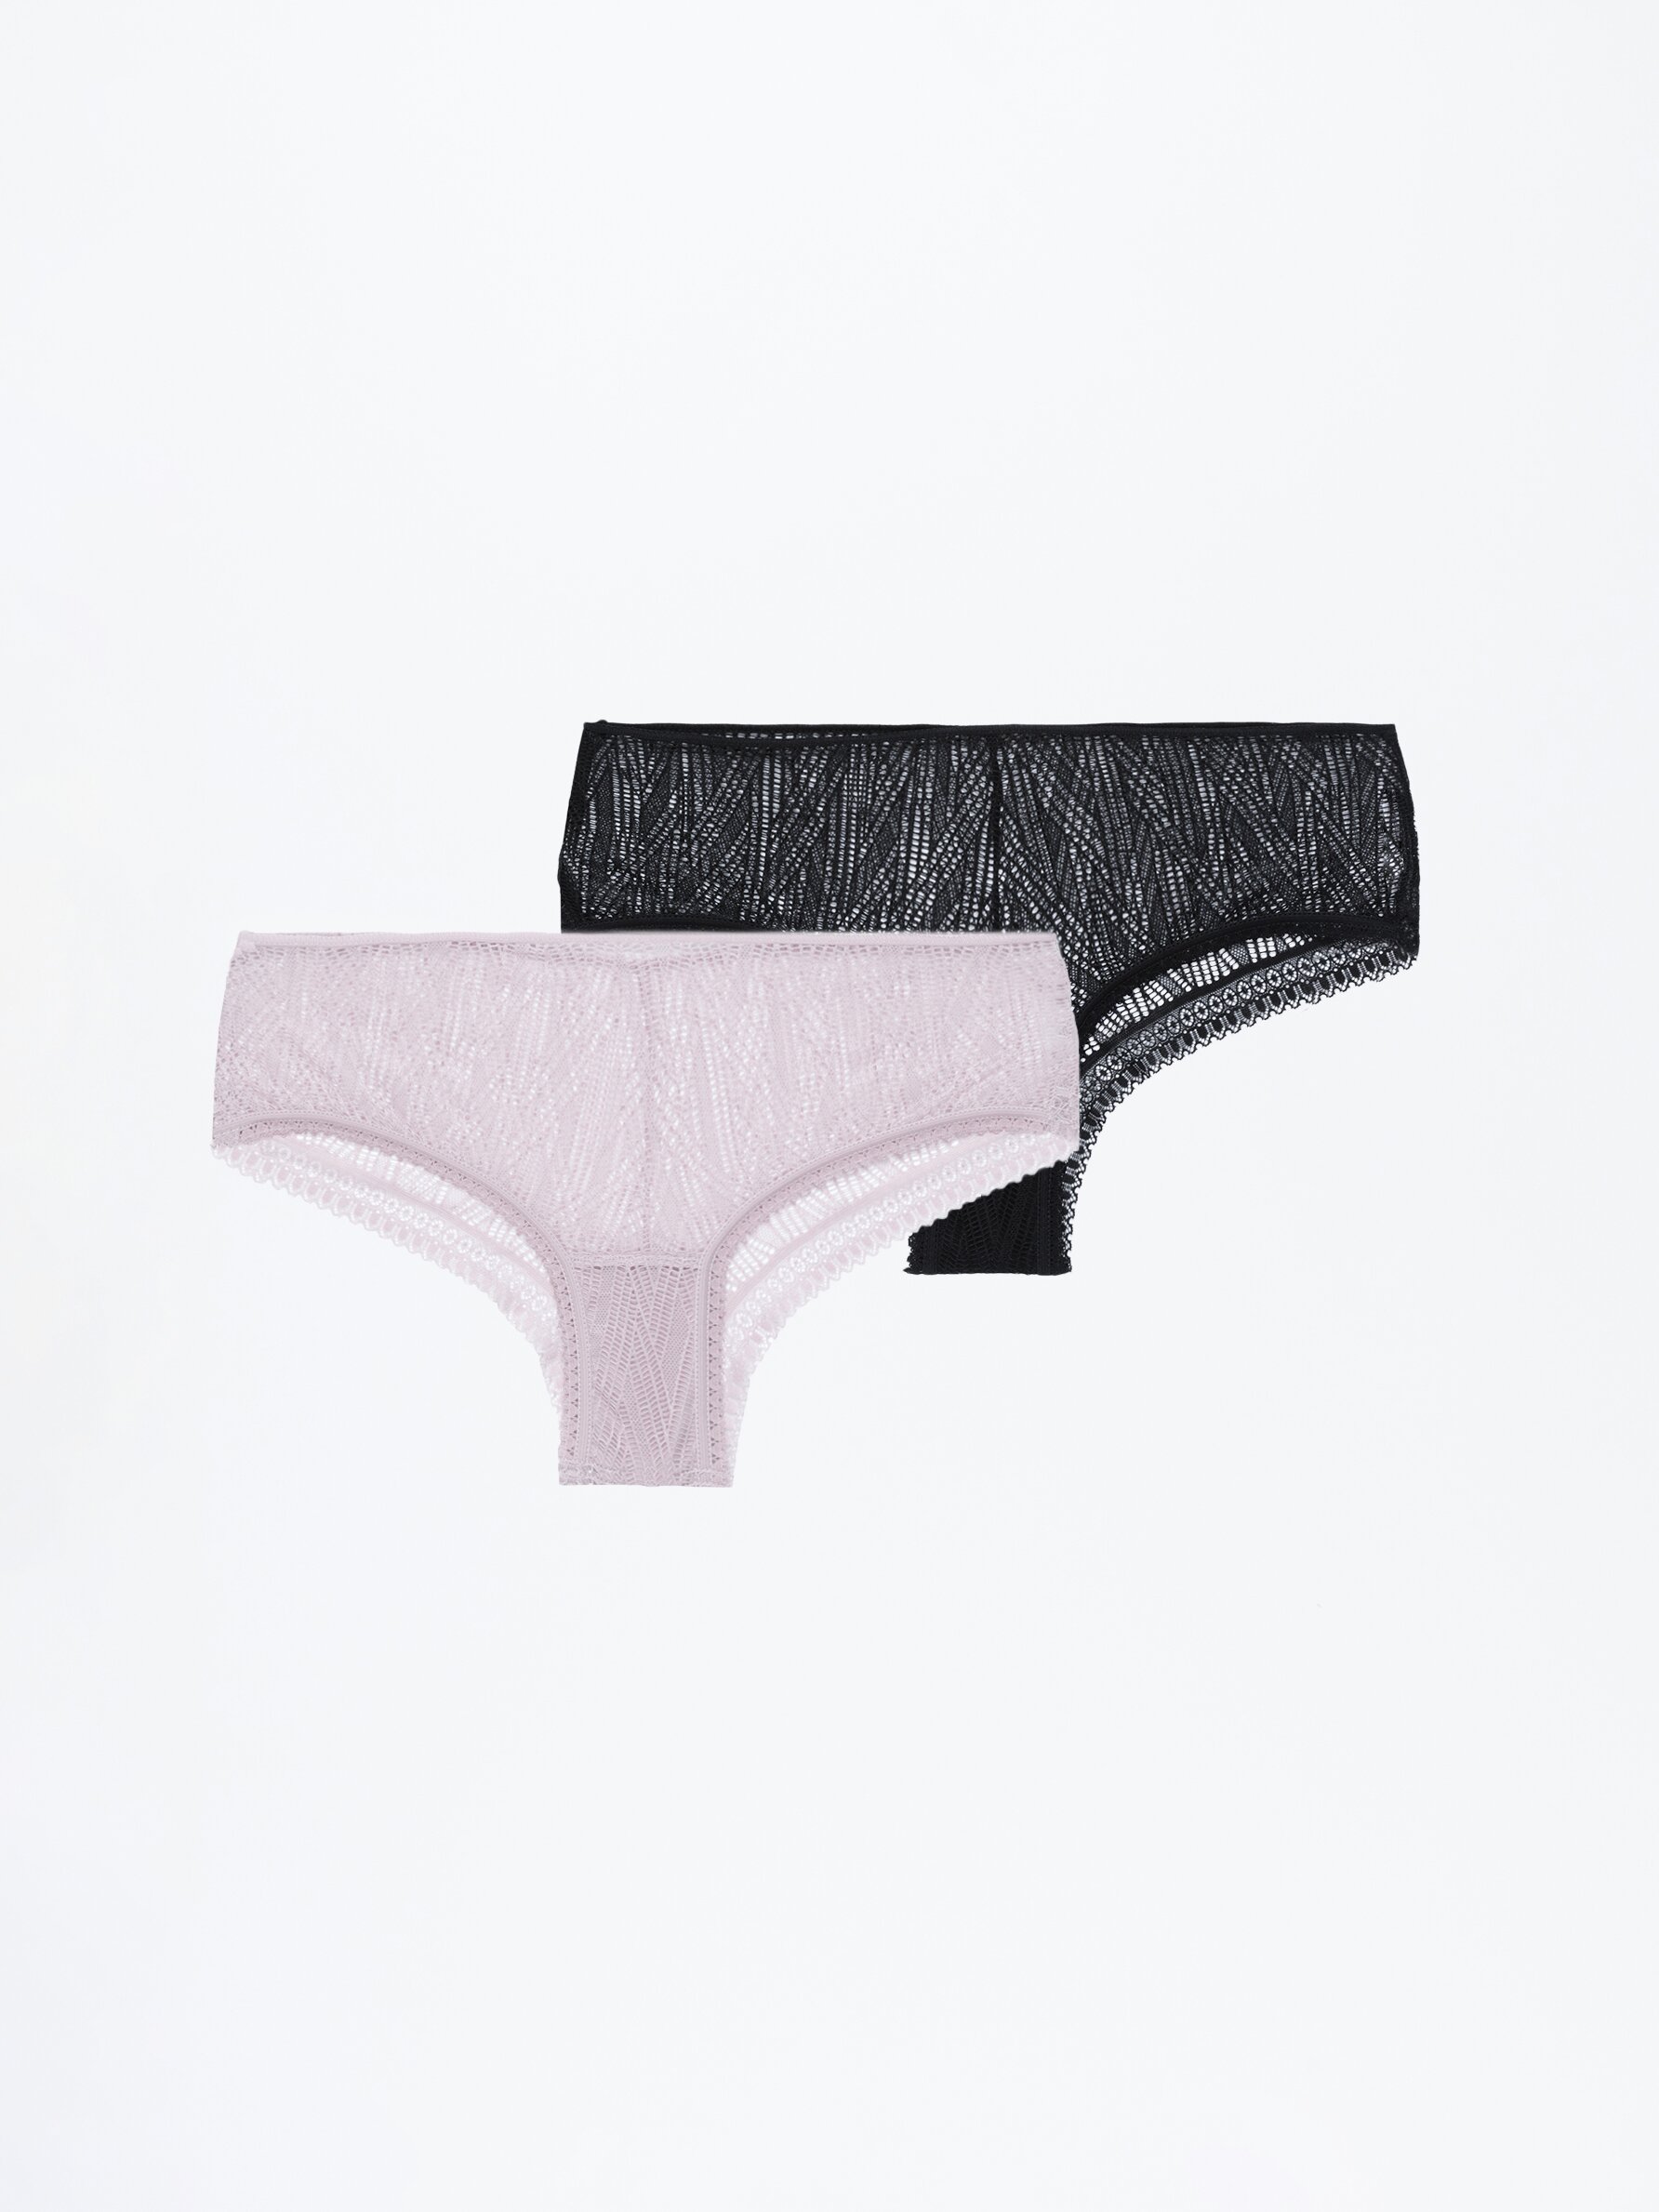 Pack of 2 lace briefs - Briefs - Underwear - UNDERWEAR, PYJAMAS - Woman 